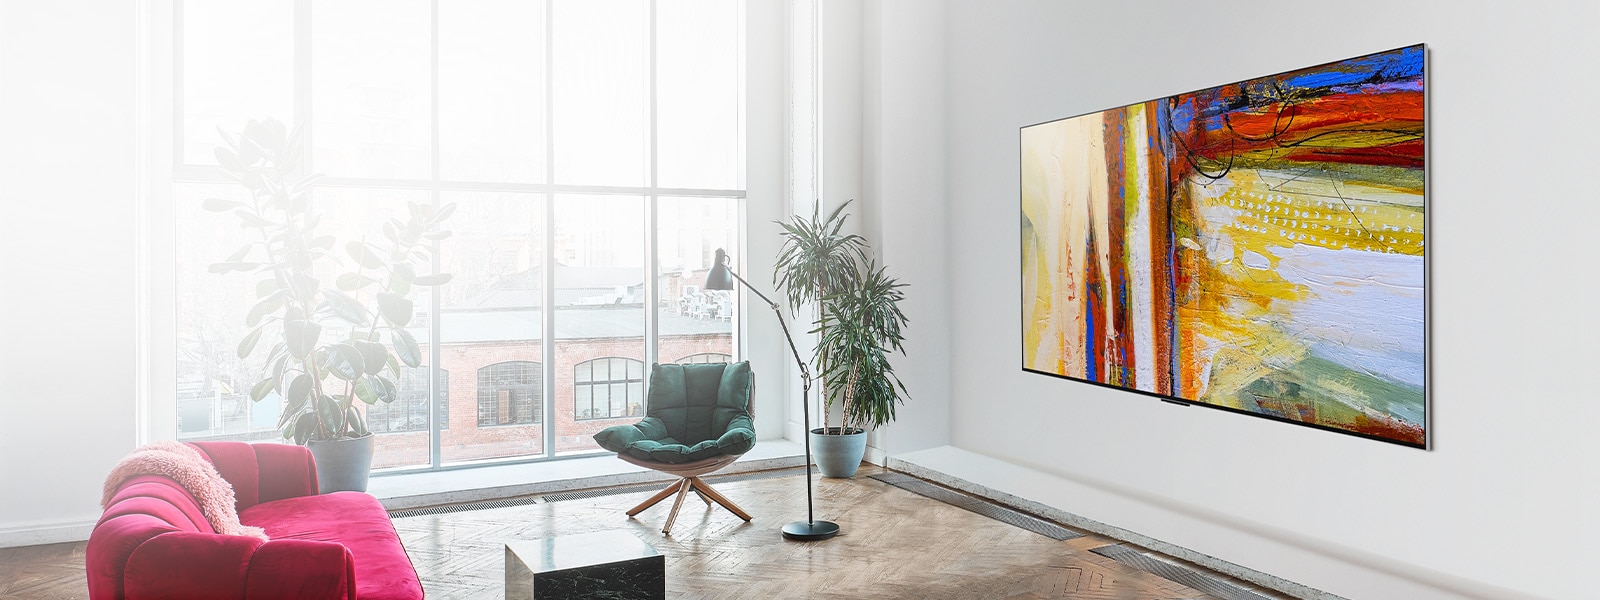 Slika televizora LG OLED G3 s prikazom šarene apstraktne umjetnine u svijetloj i živopisnoj prostoriji.